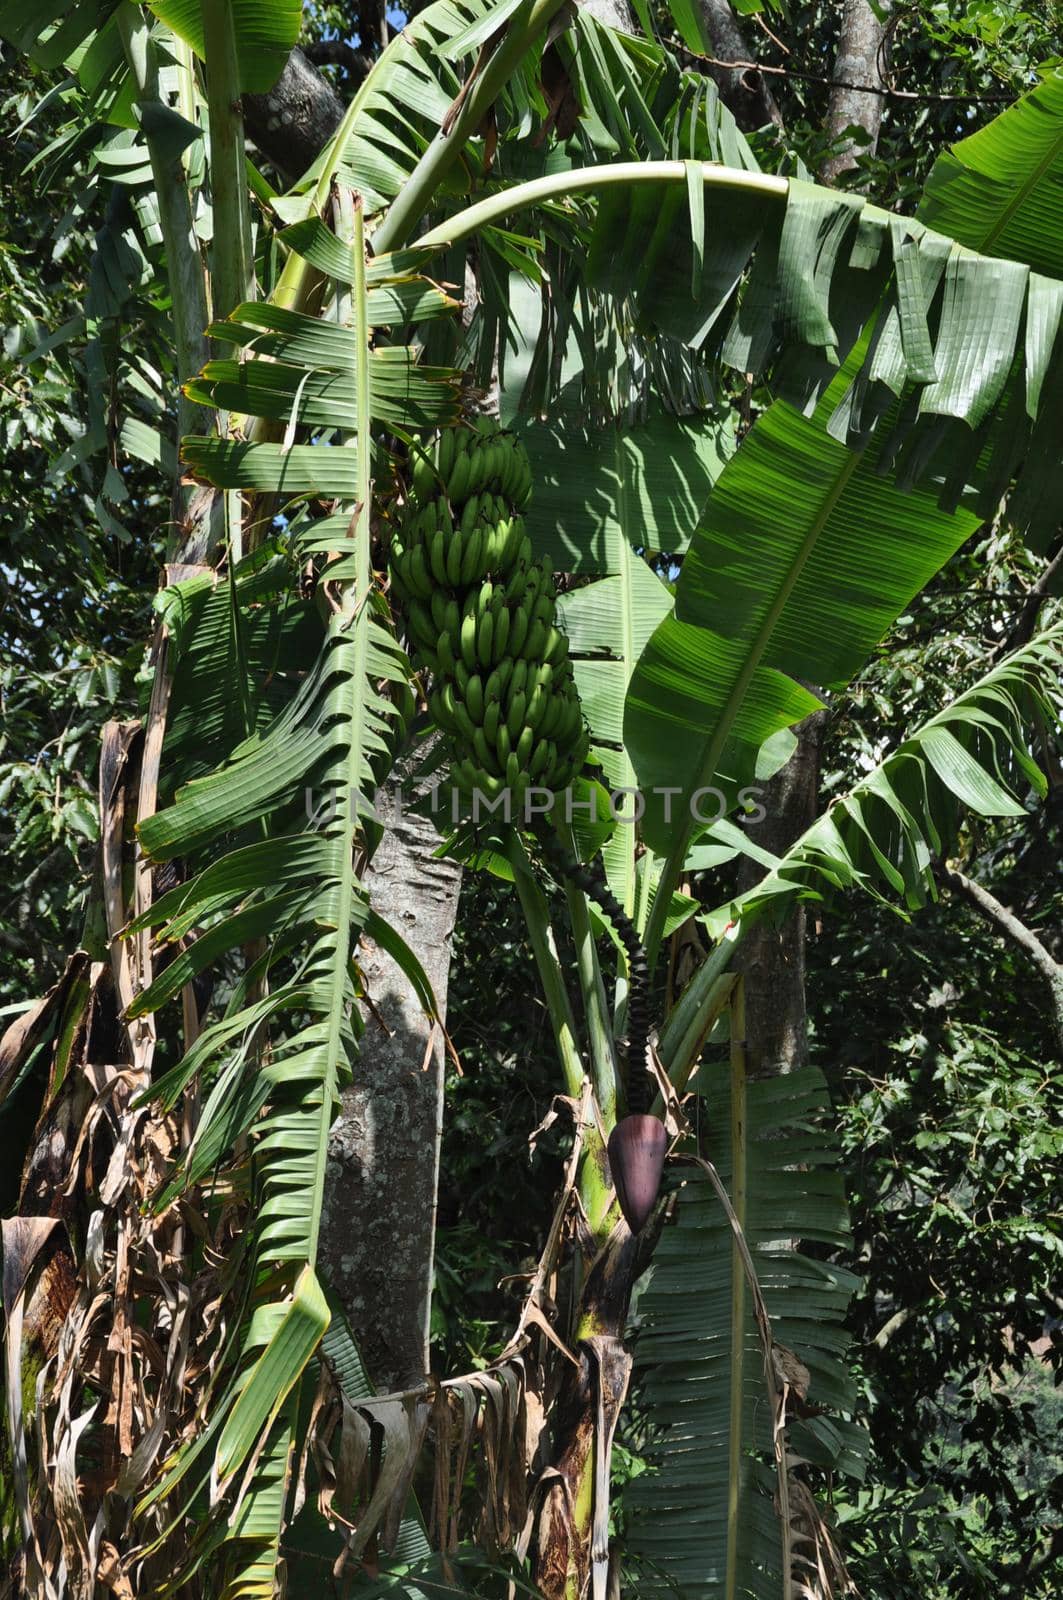 Wild bananas in a tree in Sri Lanka.